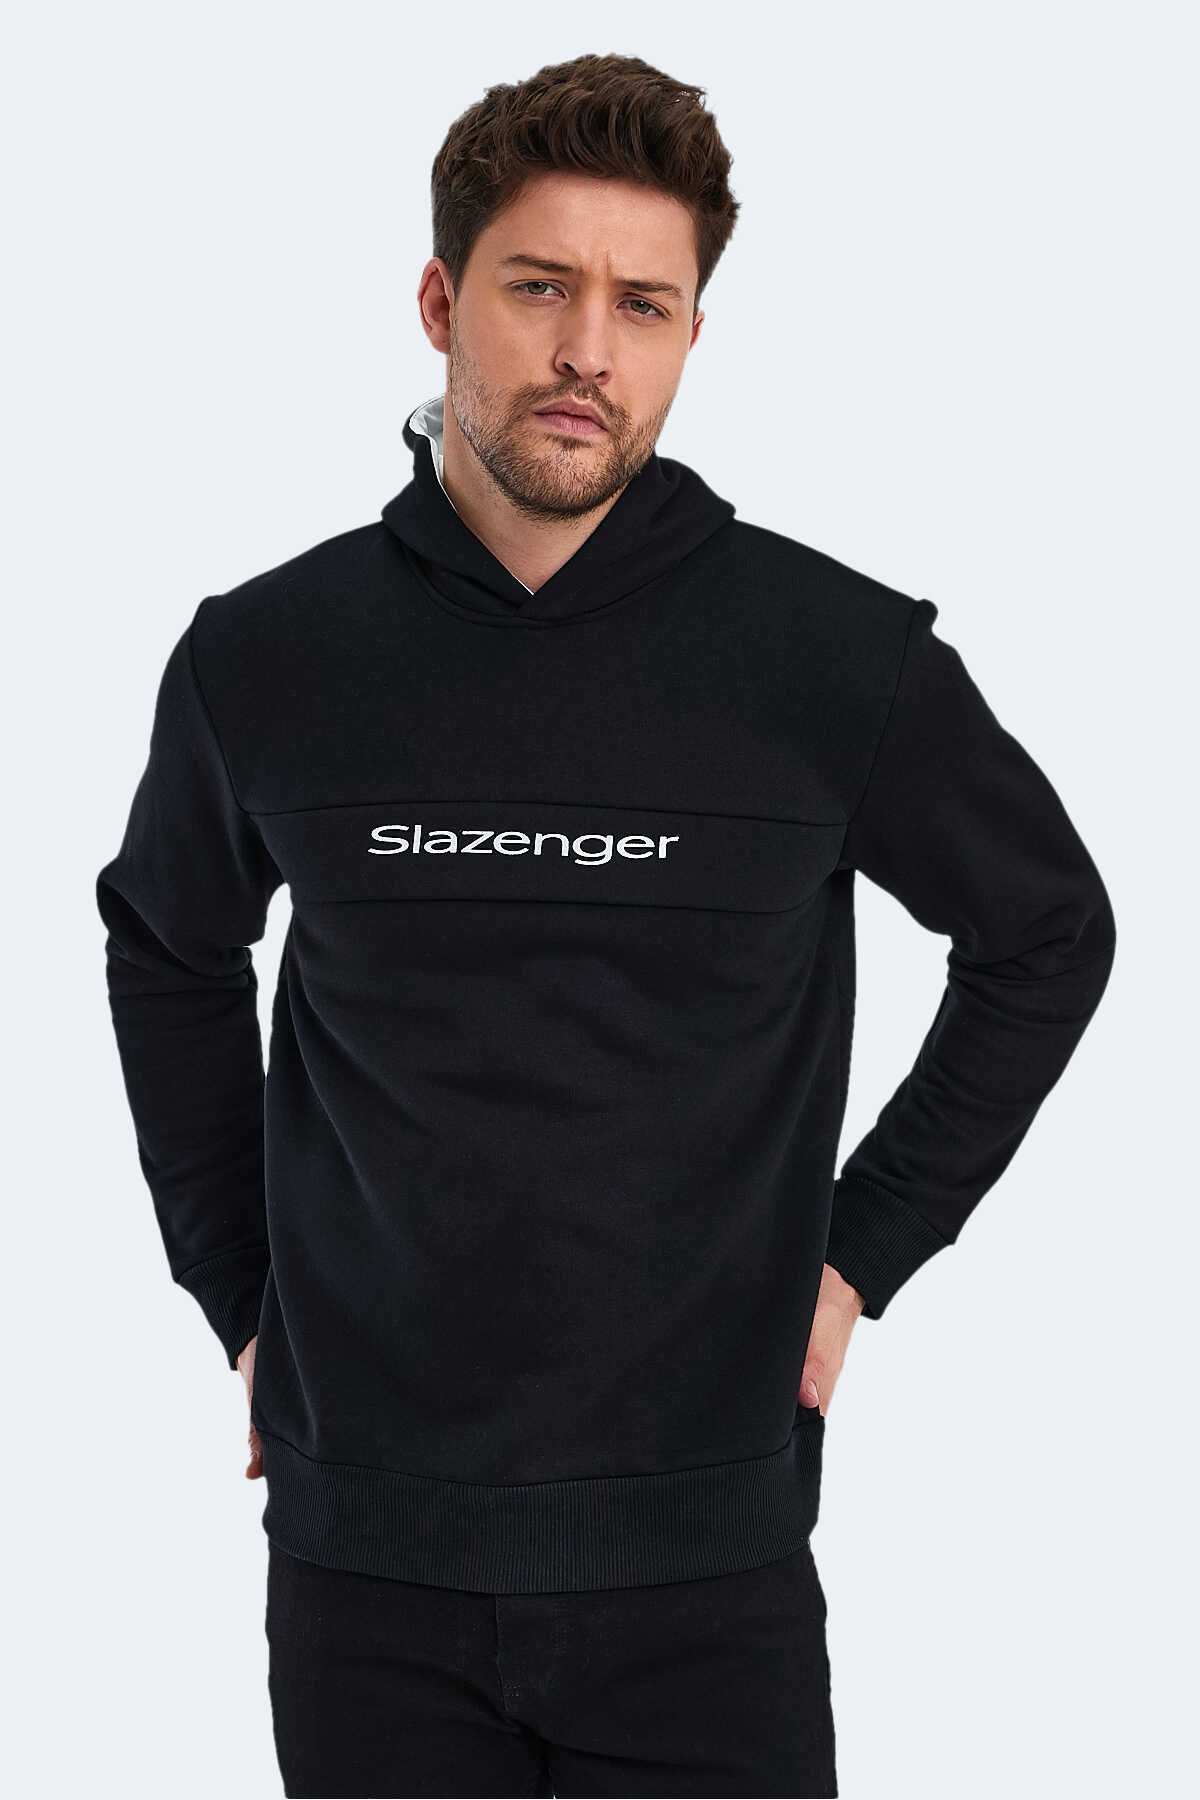 Slazenger - Slazenger KRIS IN Erkek Sweatshirt Siyah